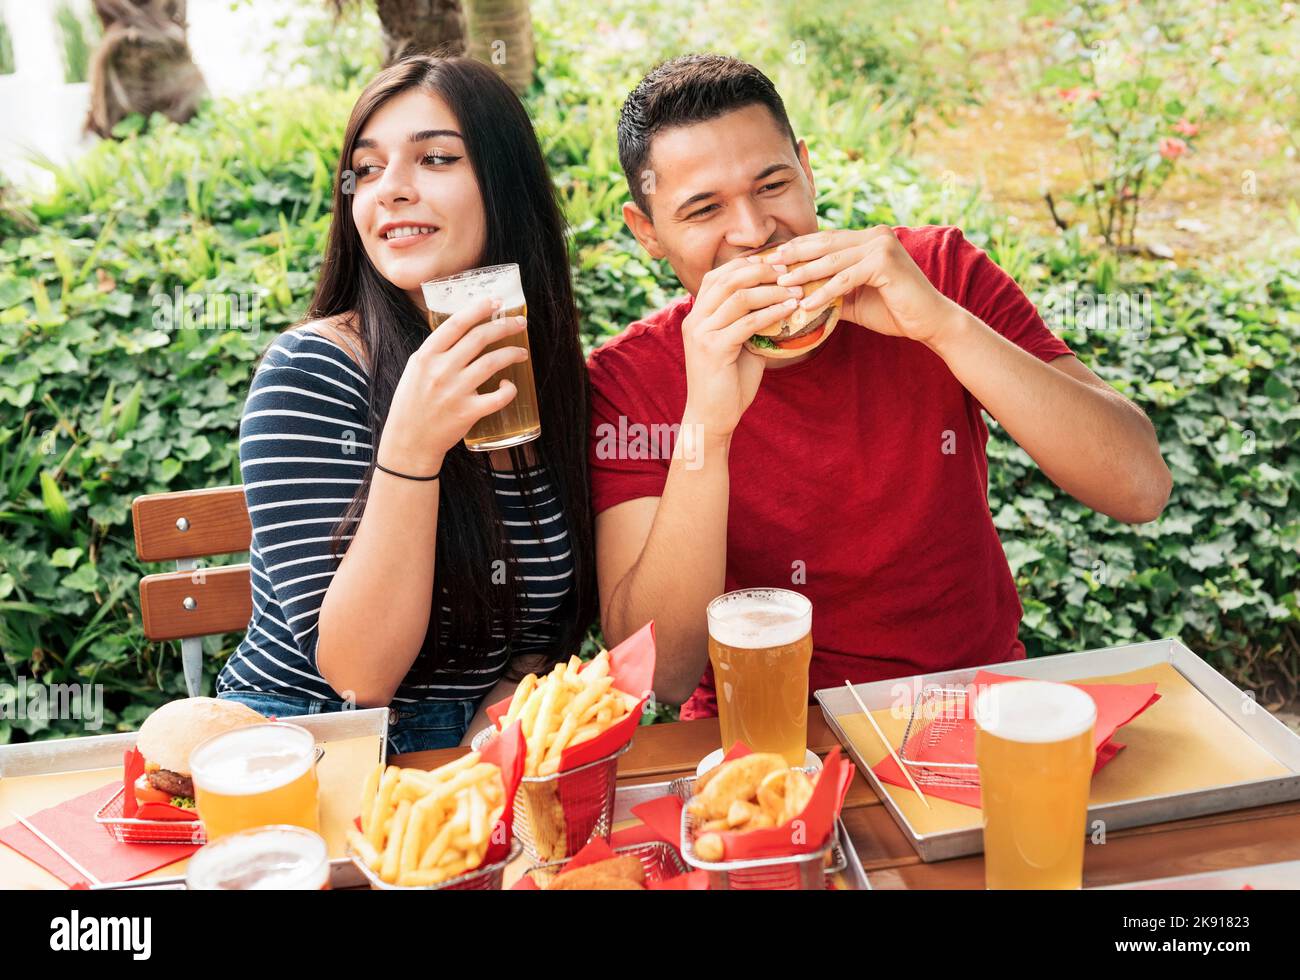 Coppia mangiando gustosi hamburger e bevendo birra alcolica mentre si siede sulla terrazza del caffè all'aperto con piante verdi in città Foto Stock